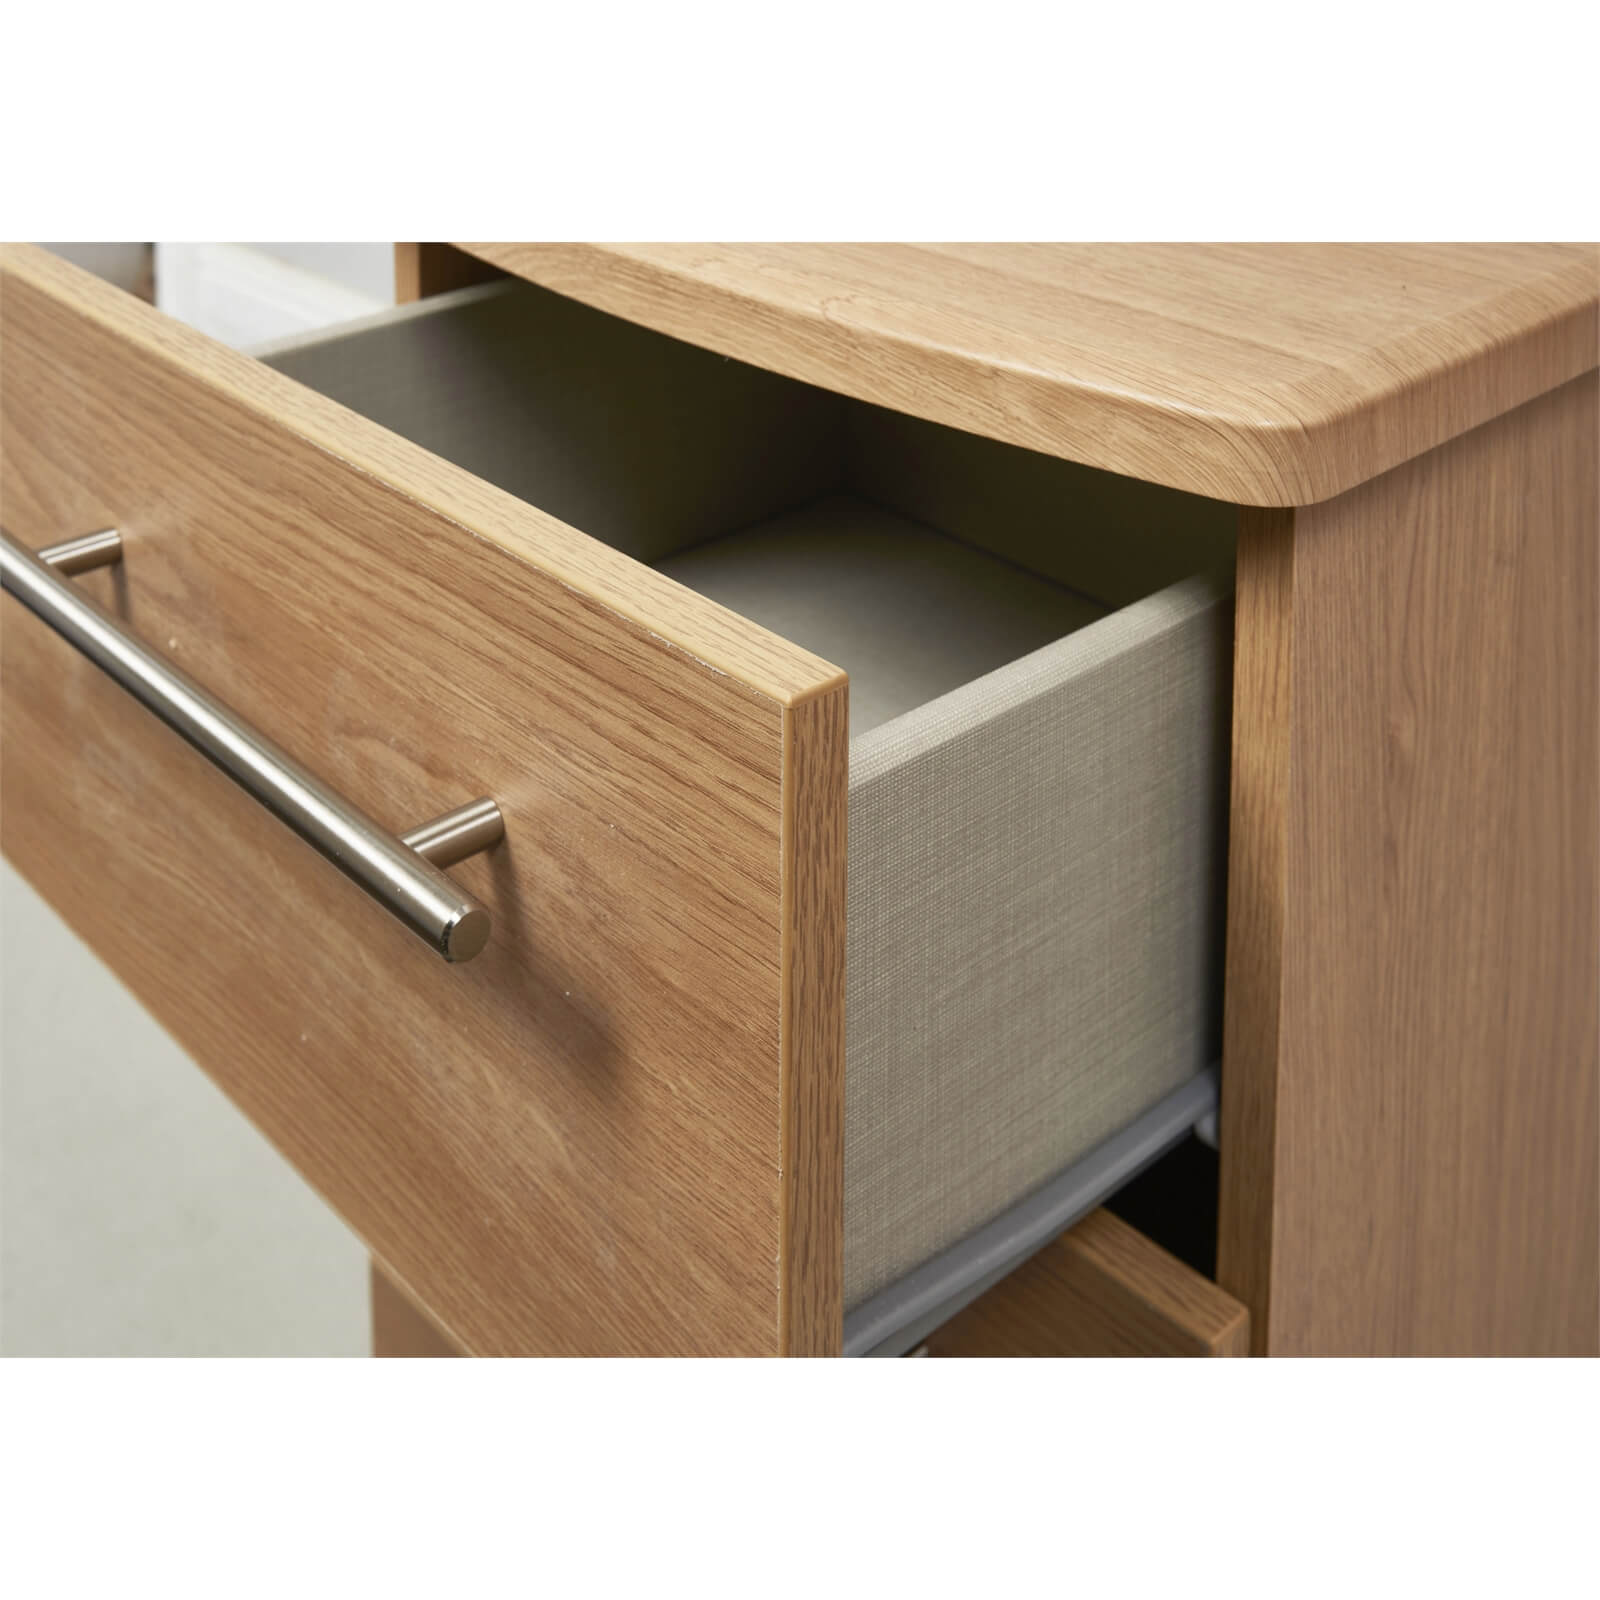 Siena Modern Oak 2 Drawer Bedside Cabinet